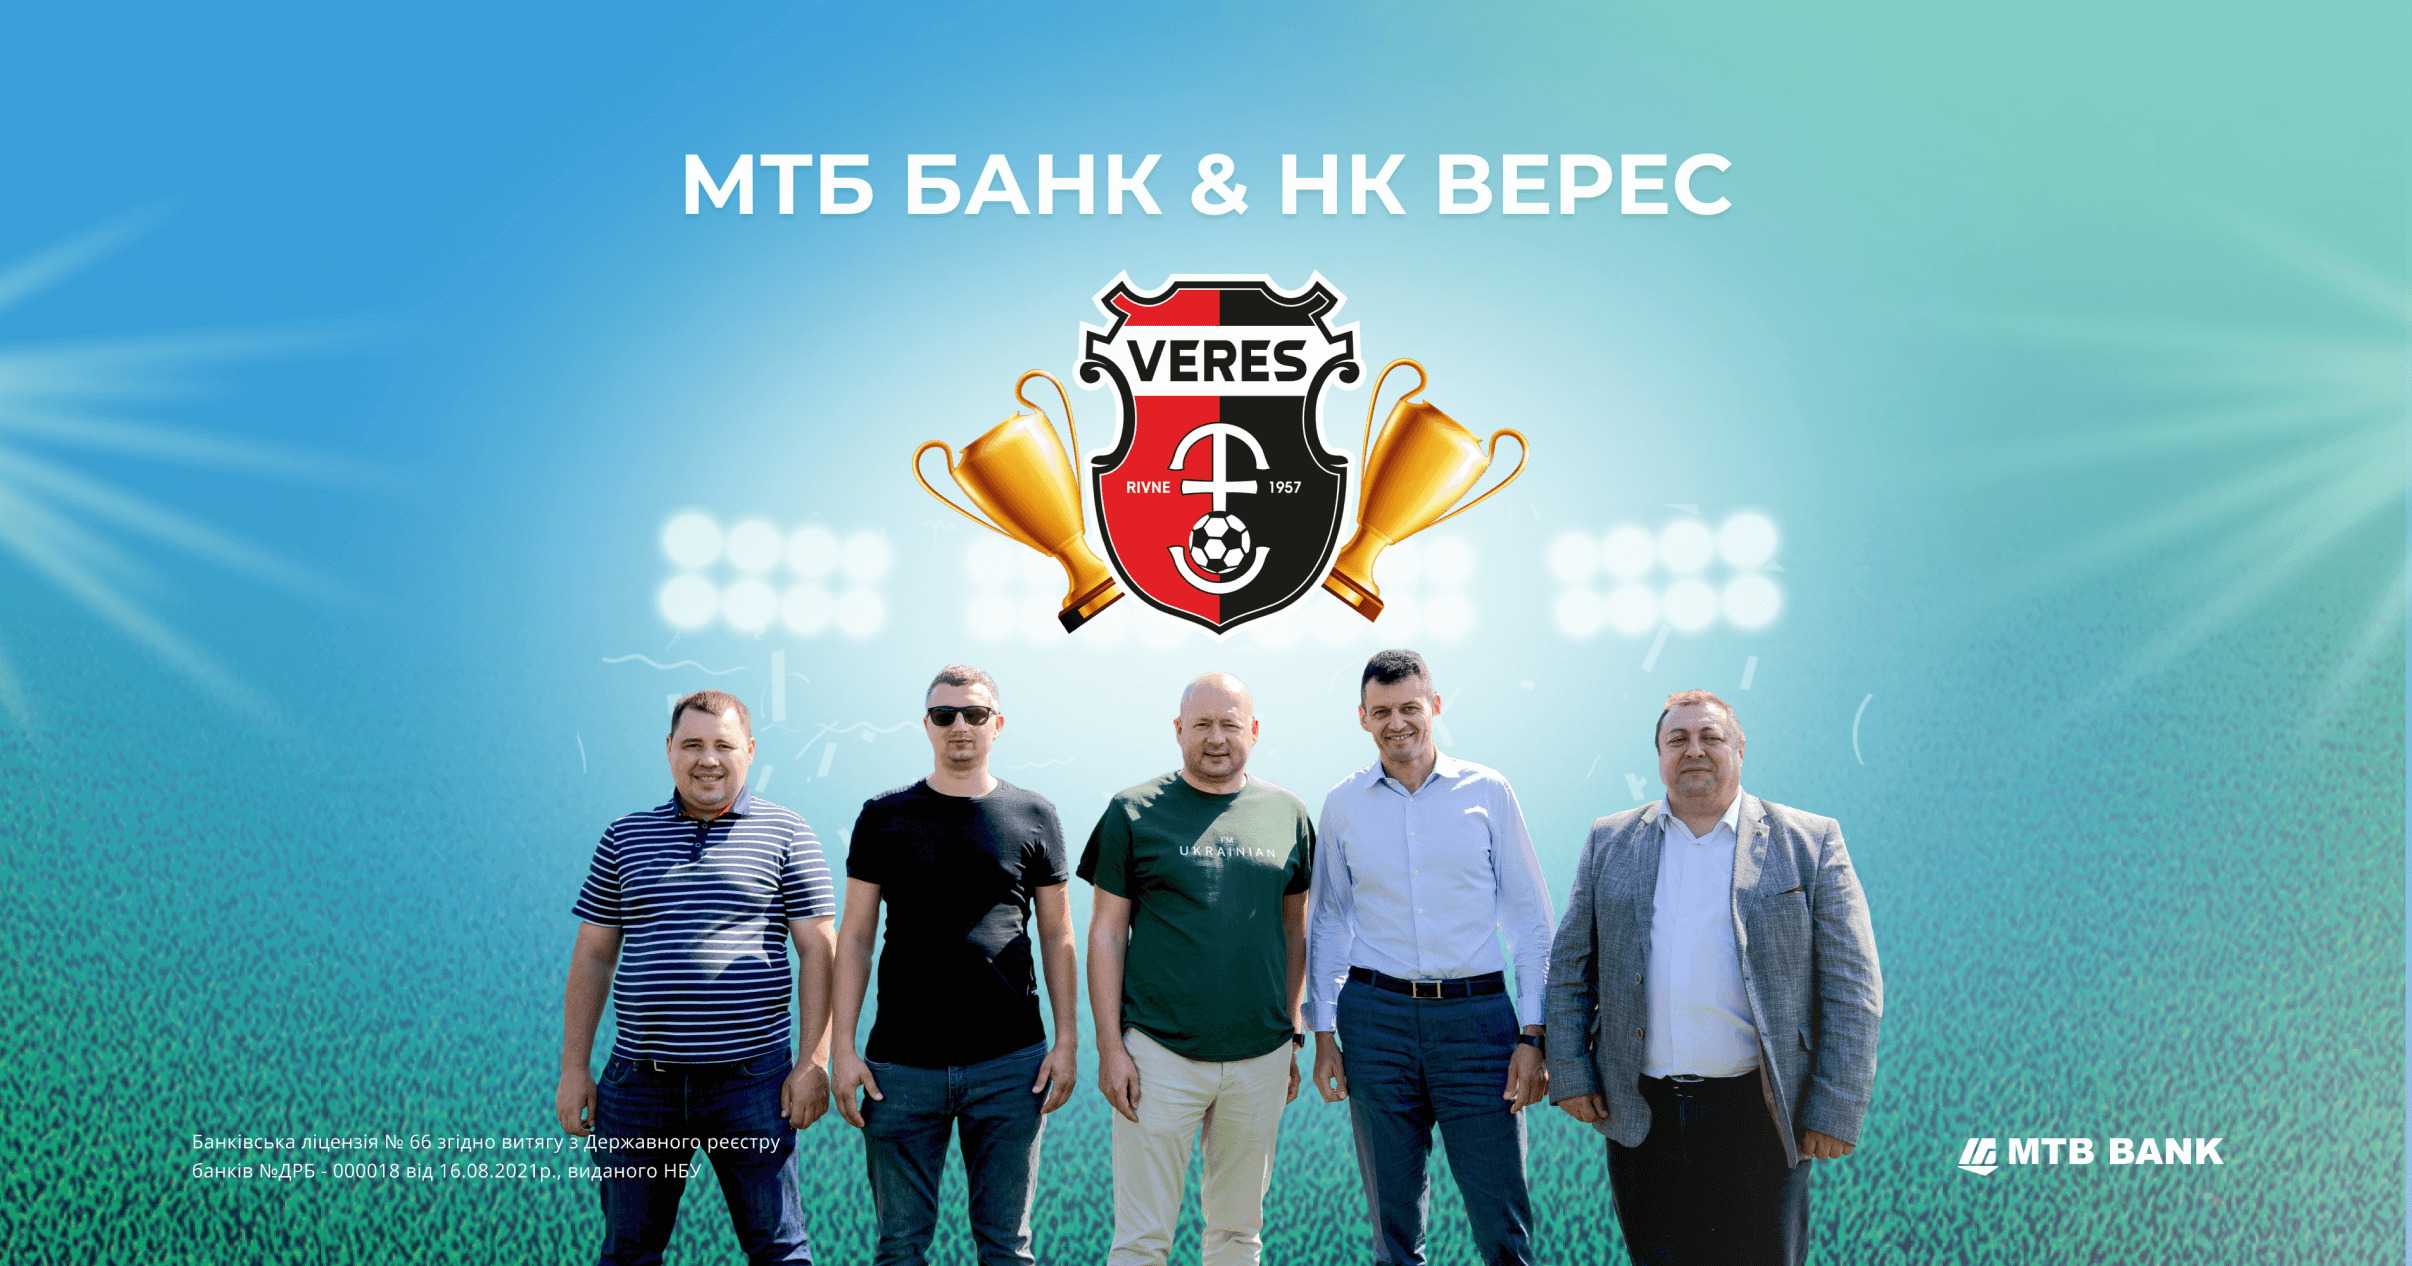 MTБ БАНК & НК Верес:  надійний тандем серйозних партнерів - фото - mtb.ua